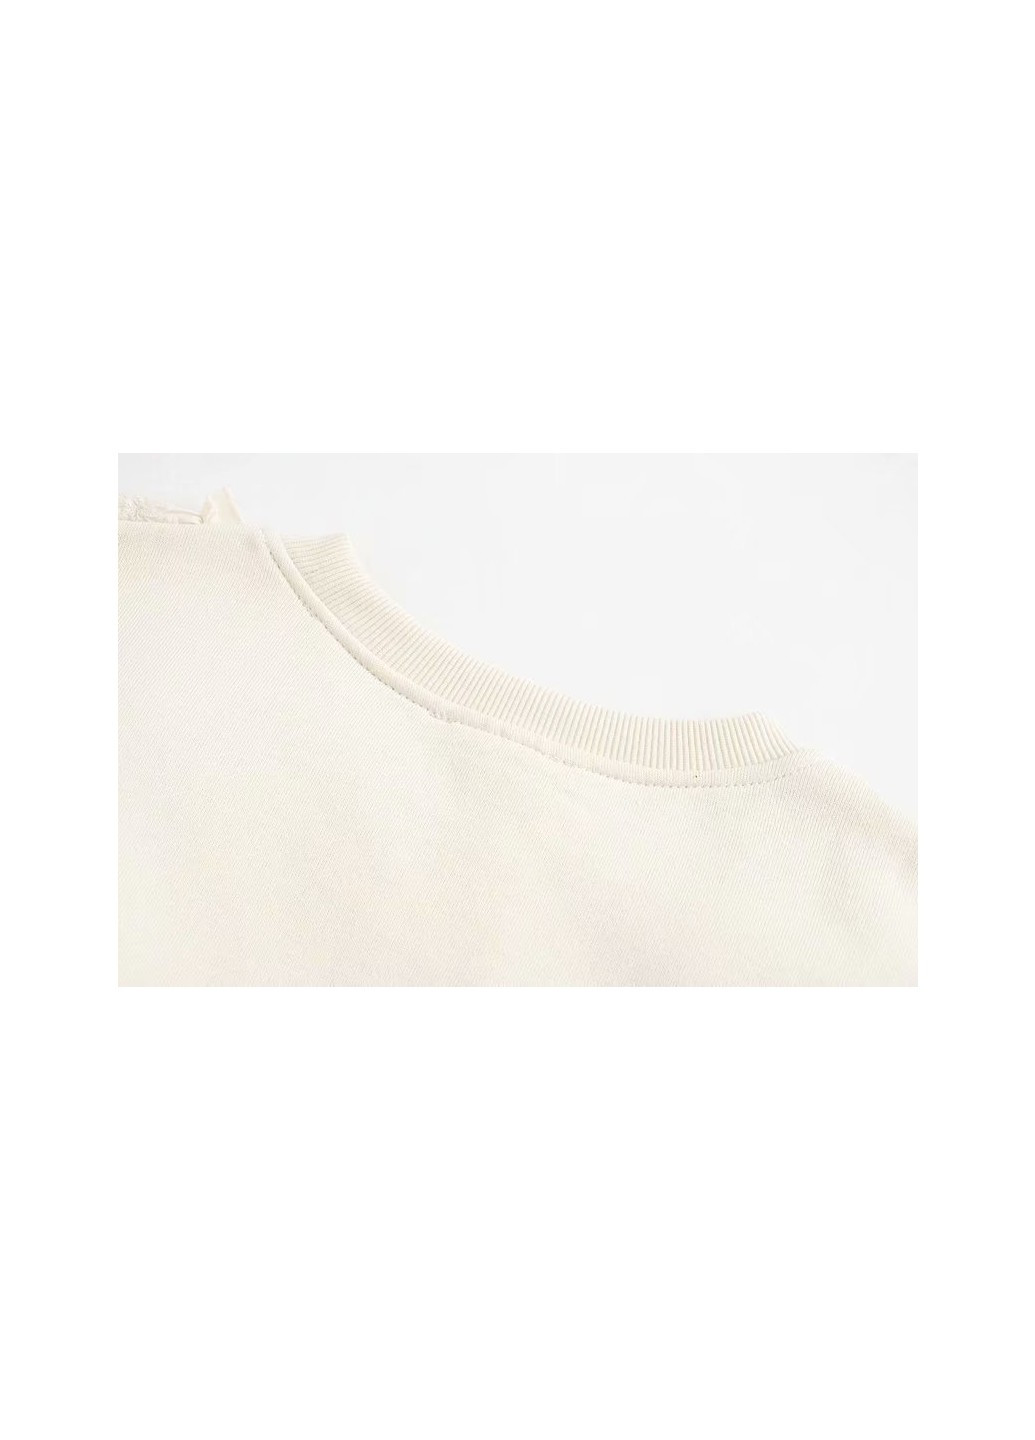 Свитшот женский с кружевной отделкой Lace Berni Fashion - крой однотонный молочный кэжуал хлопок - (231478555)